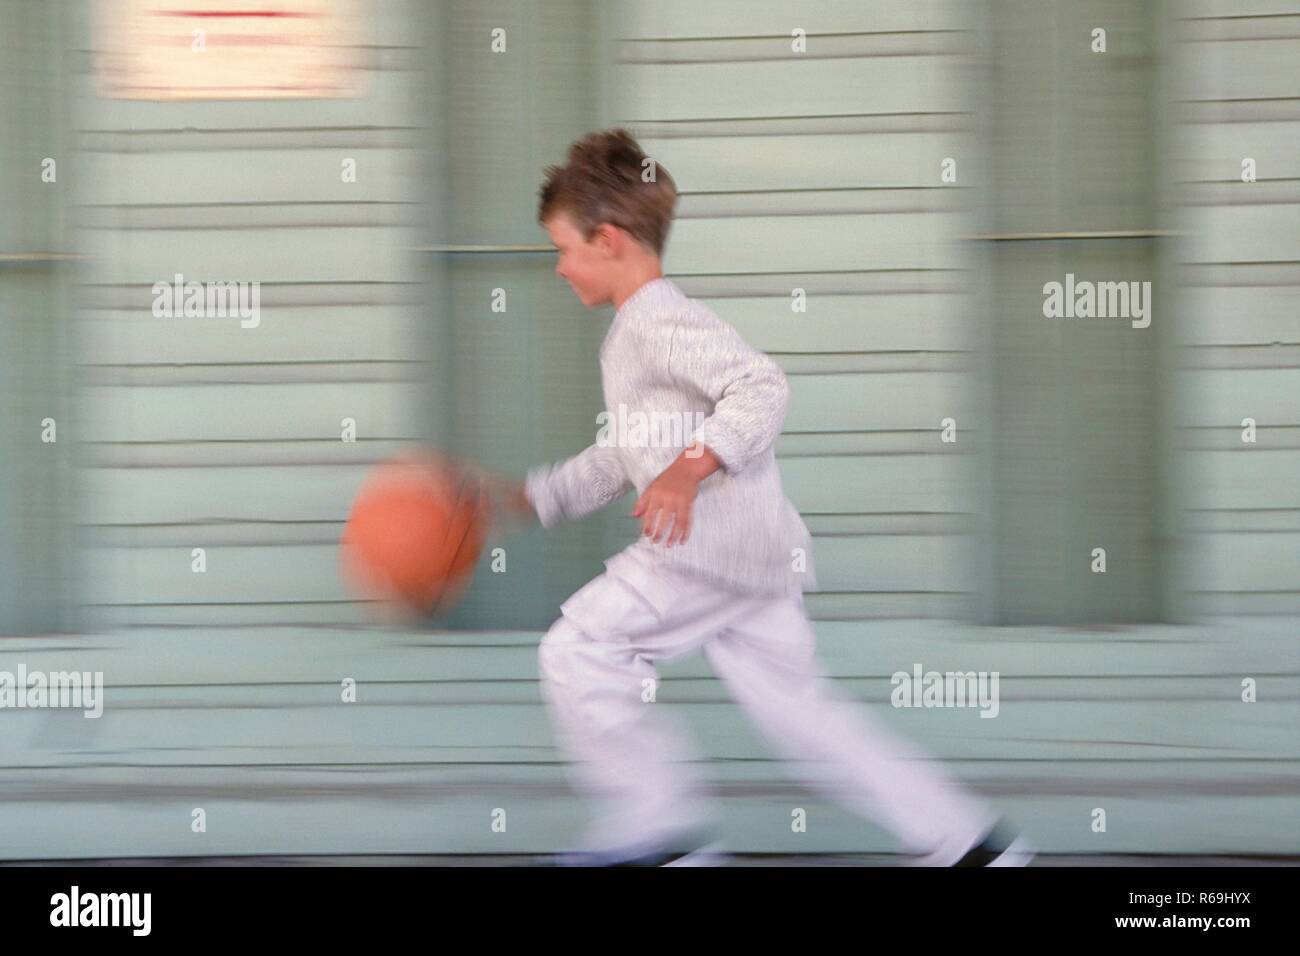 Portrait, Ganzfigur, 8- jaehriger Junge bekleidet mit grauer Hose, Pullover und Turnschuhen laeuft mit seinem orangem Basketball an einer graublau gestrichenen Fassade vorbei Stock Photo